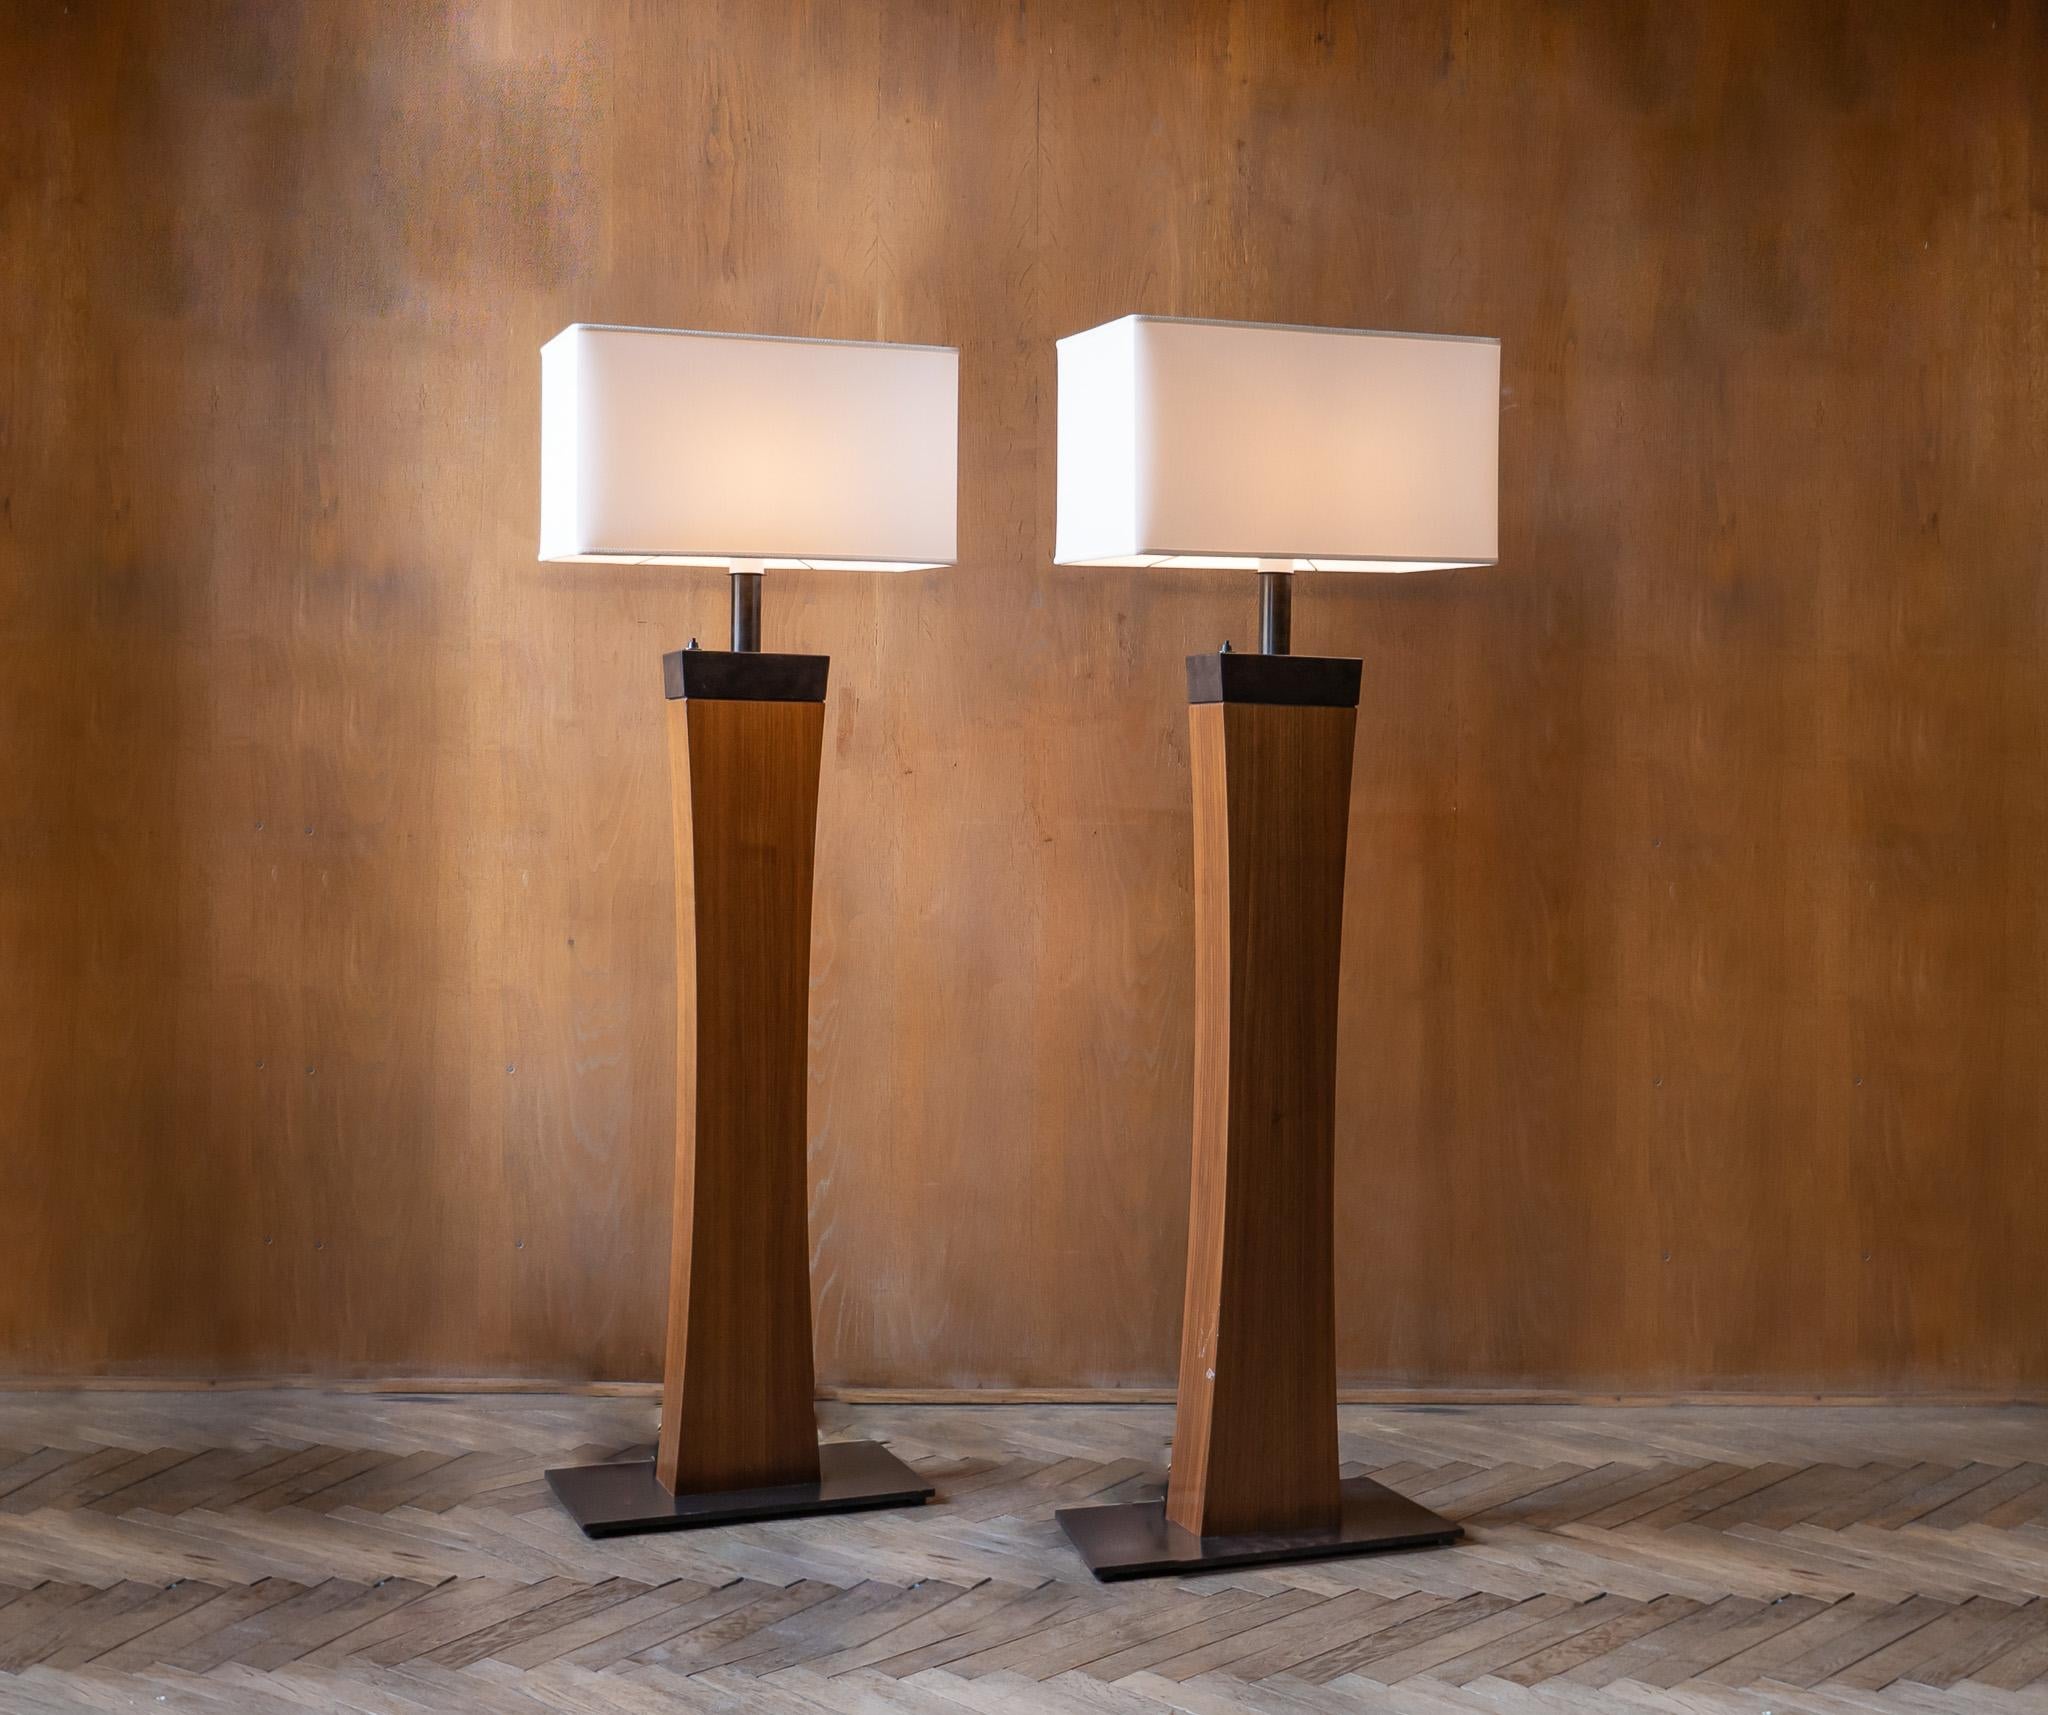 Ensemble de 2 lampadaires italiens en bois de style moderne du milieu du siècle dernier, Italie, années 1970.

Cet ensemble de deux lampadaires italiens de style moderne du milieu du siècle a été produit à la fin des années 1970.
Ces lampes